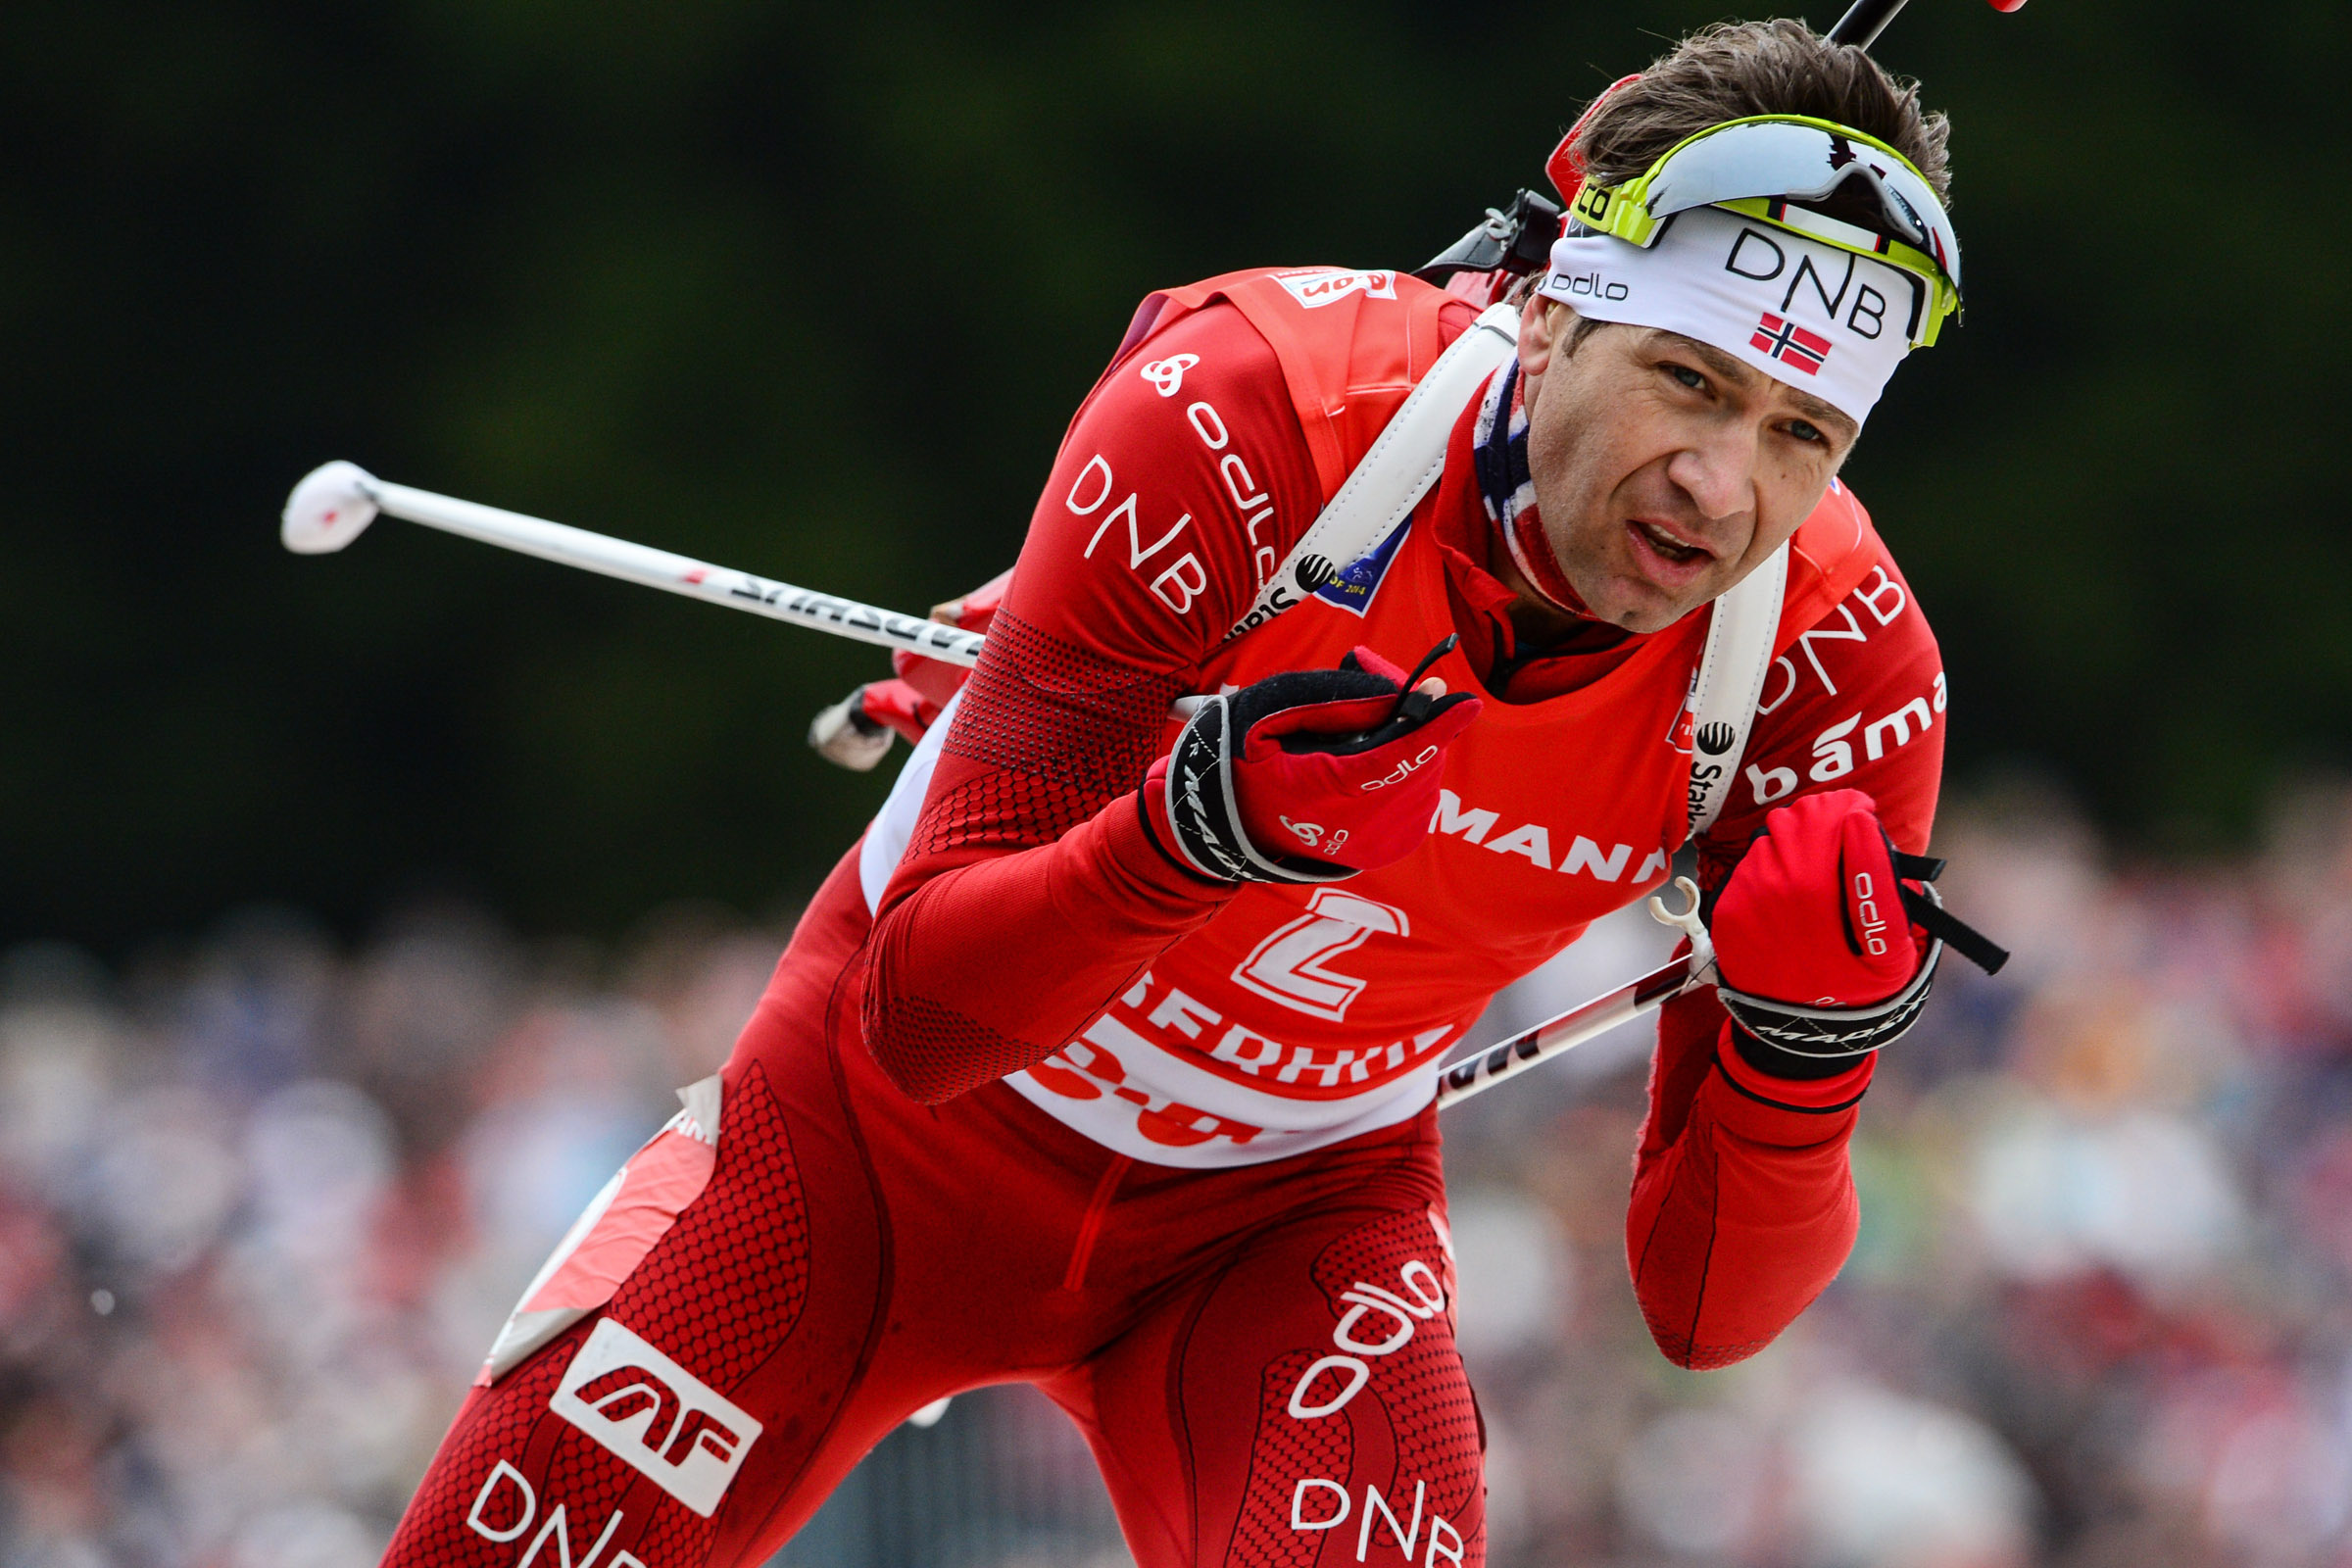 Ole Einar Bjoerndalen, Biathlon legend, HD wallpapers, Sports icon, 2400x1600 HD Desktop